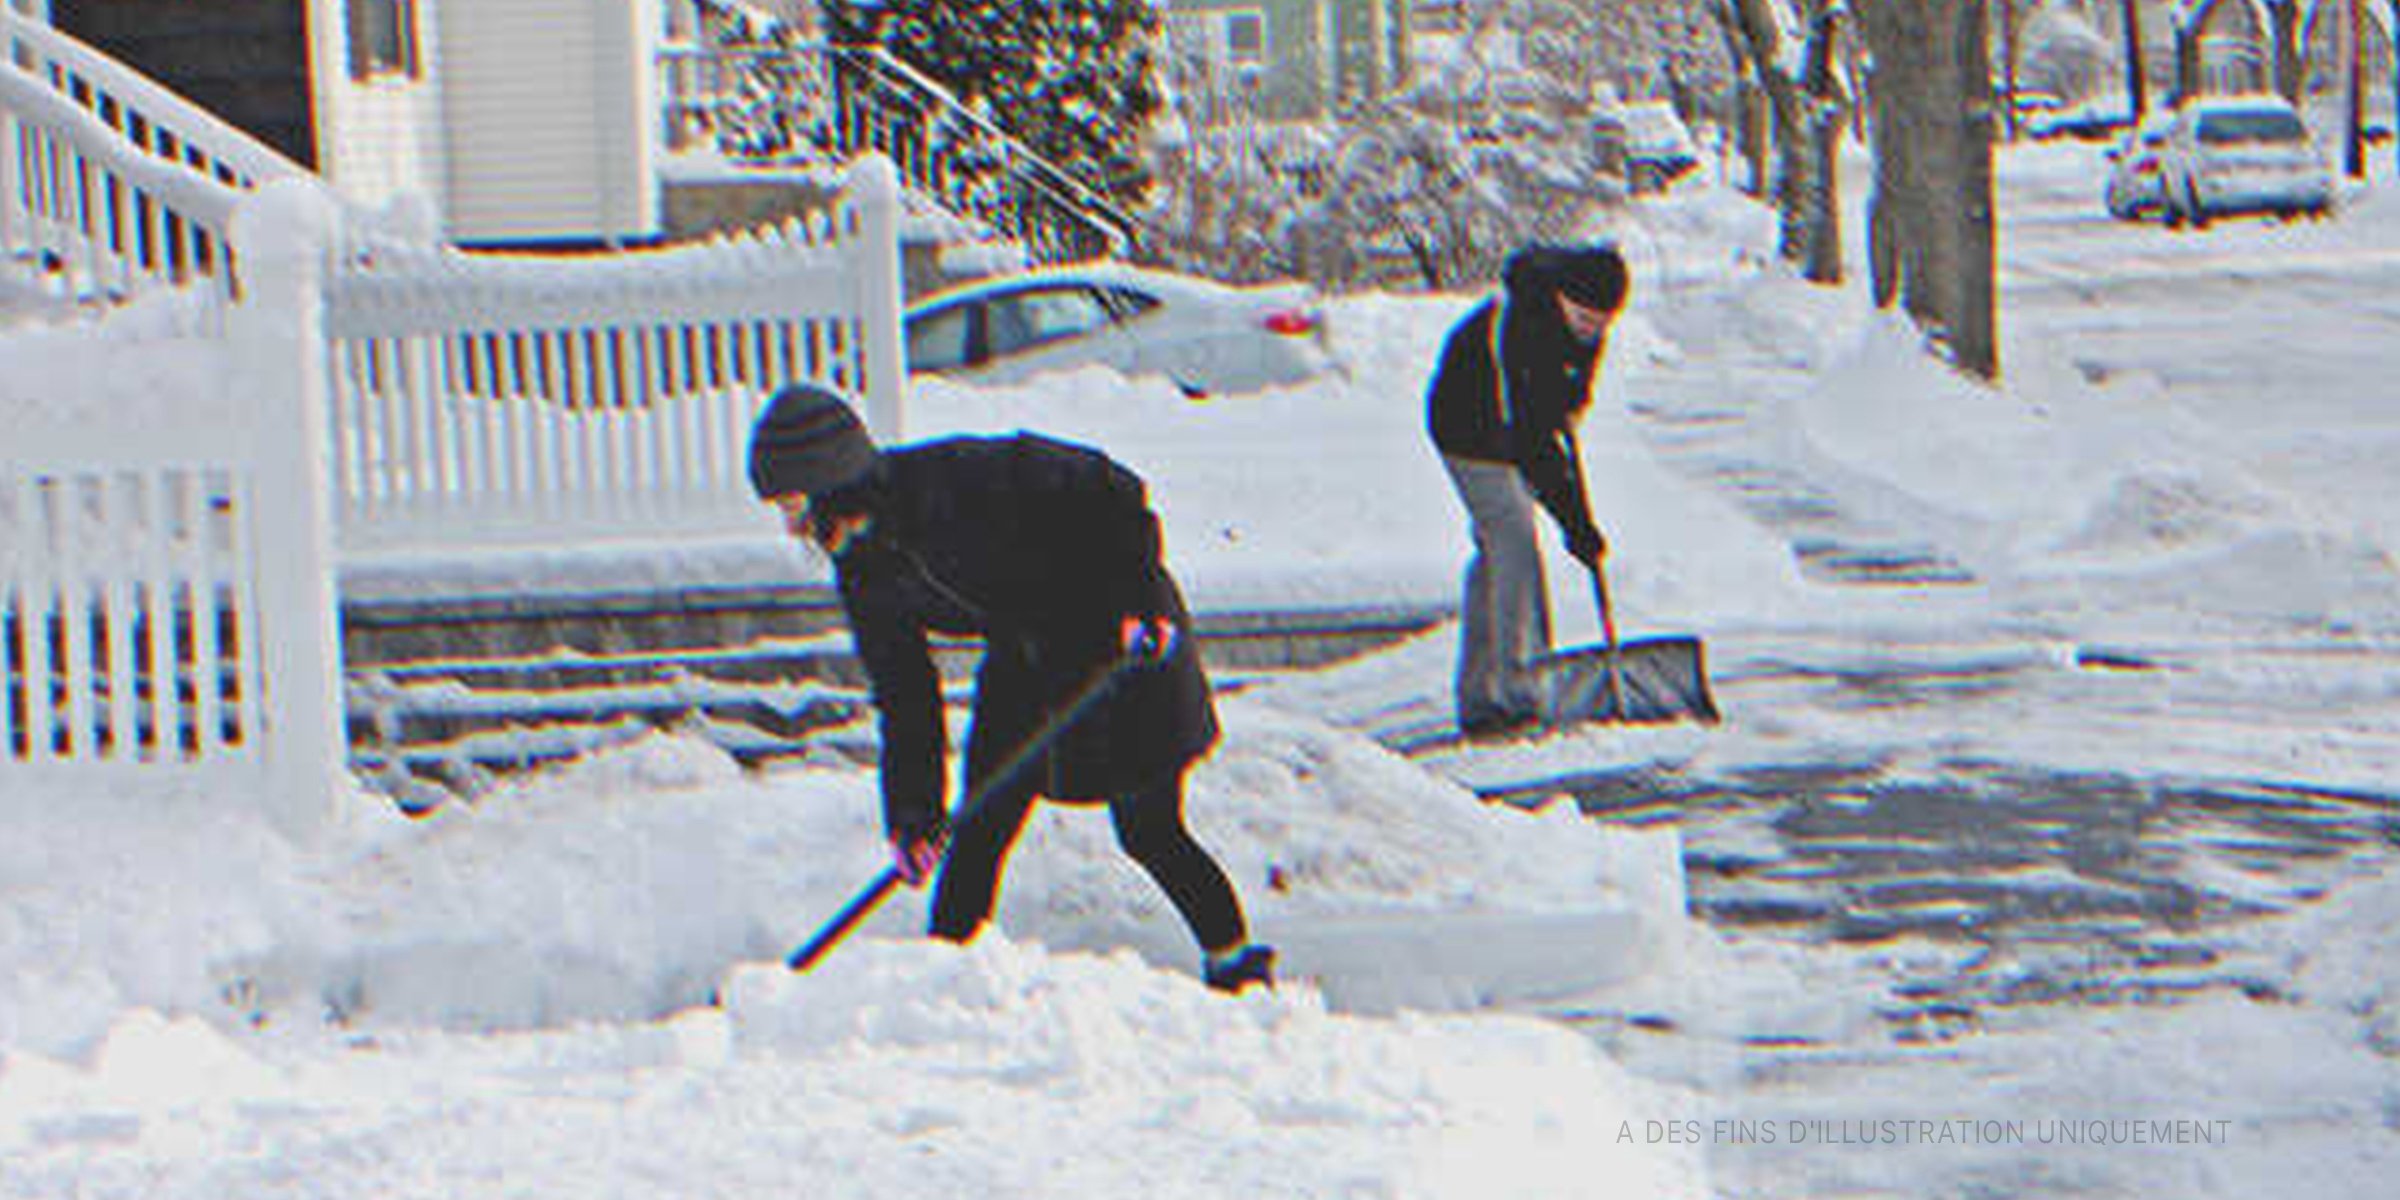 Deux hommes pelletant de la neige | Flickr / unnormalized (CC BY-SA 2.0)